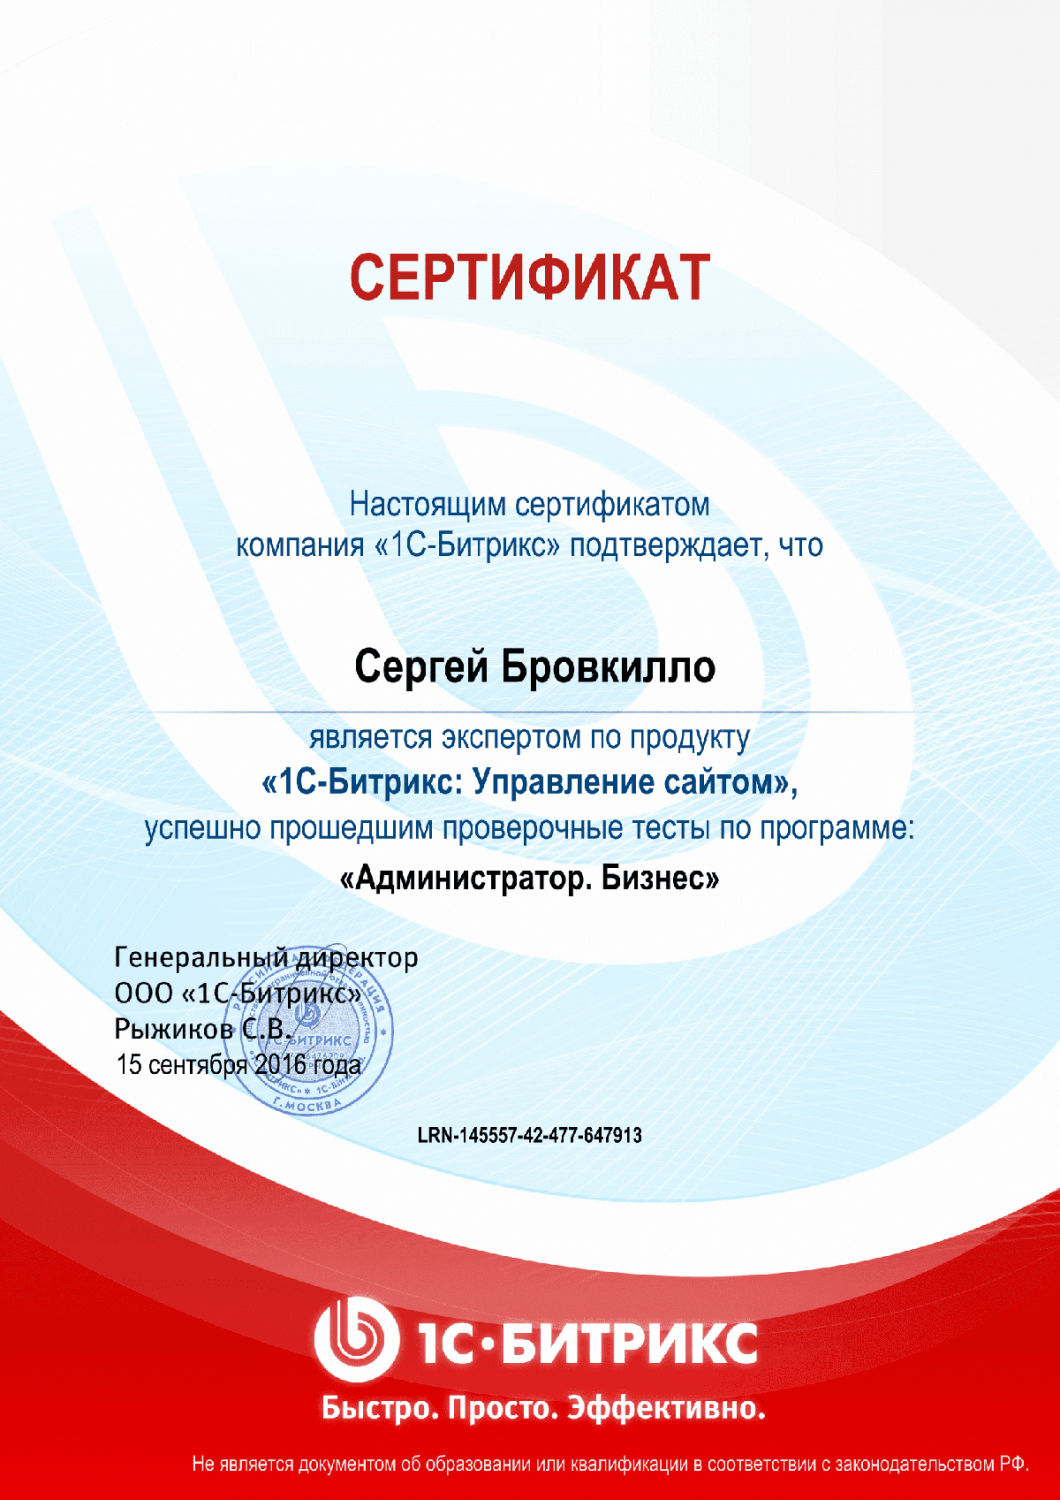 Сертификат эксперта по программе "Администратор. Бизнес" в Краснодара